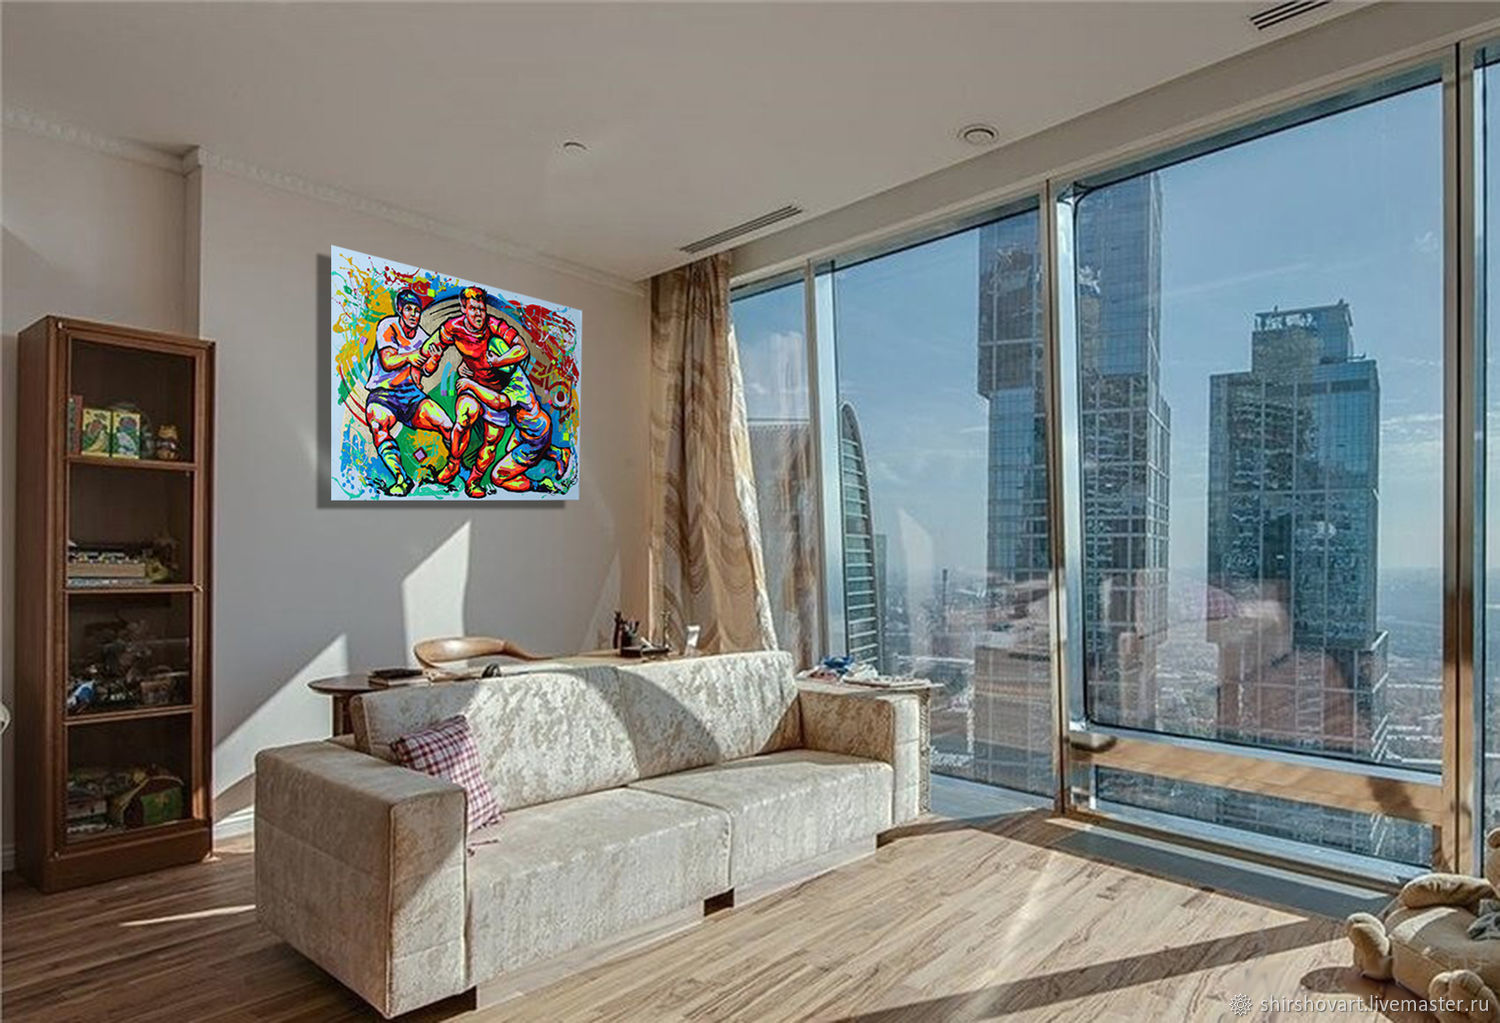 Новые квартиры в центре города. Квартира с панорамными окнами. Квартира с видом на Москва Сити. Однокомнатная квартира с панорамными окнами. Квартиры в Москва Сити вид с окна.